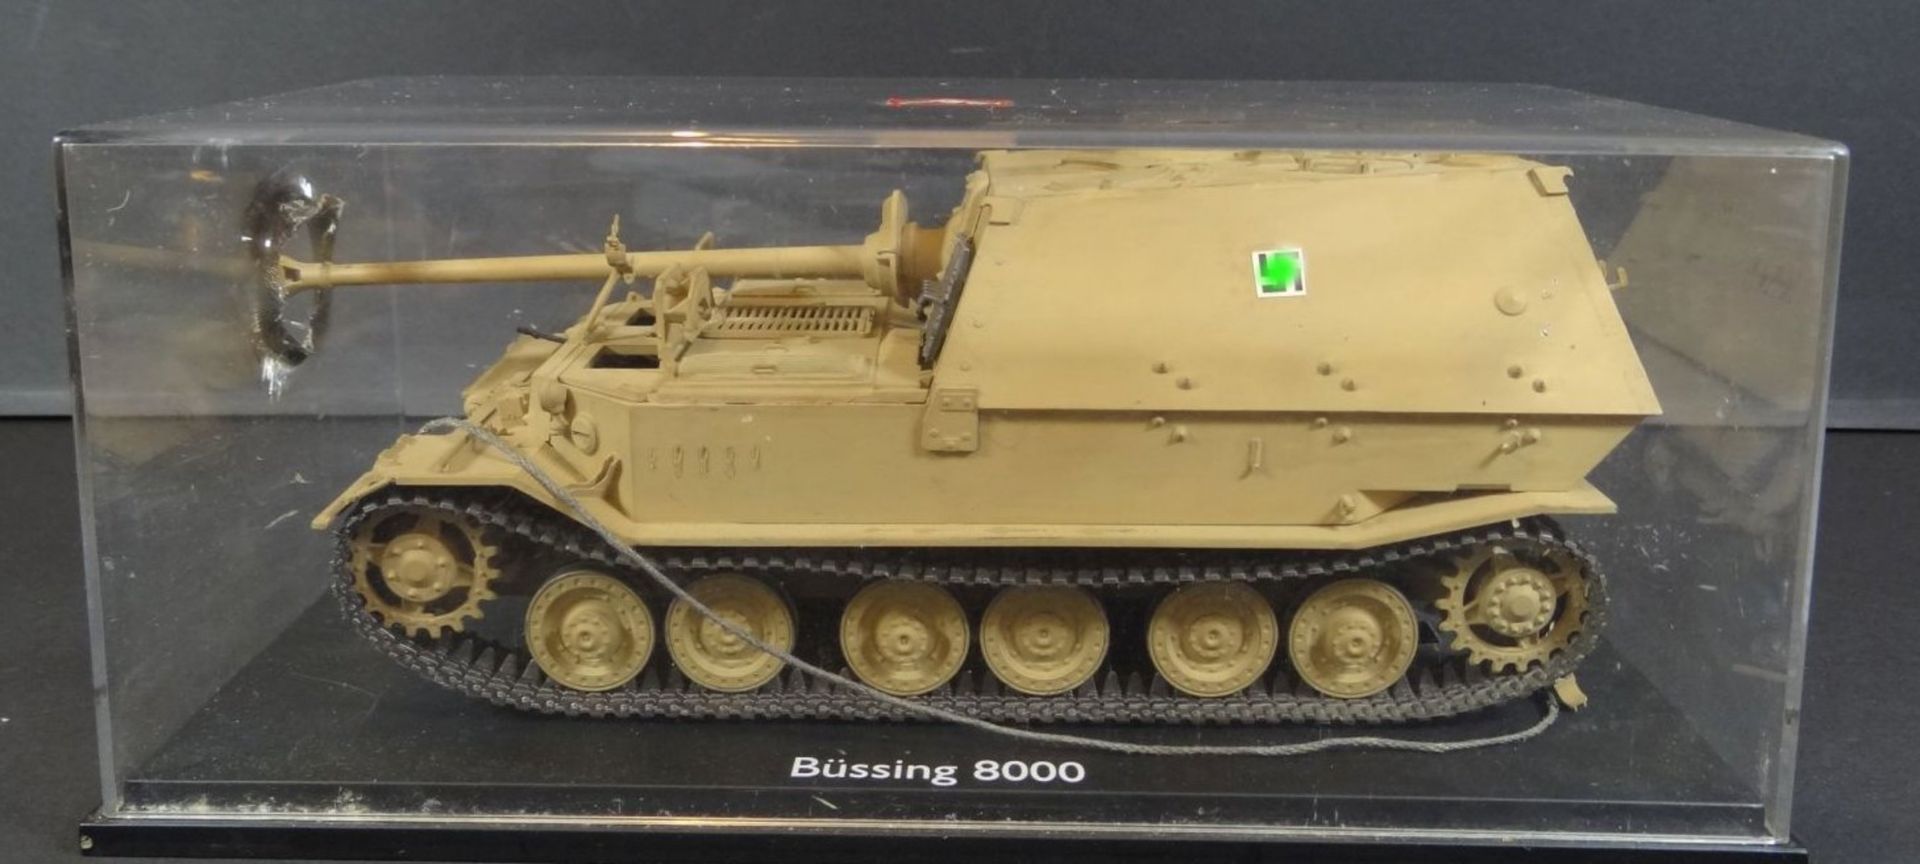 Modellbau-Panzer "Tiger" 2.WK, in Plexiglas, Kasten H-10,5 cm, 23x15 cm